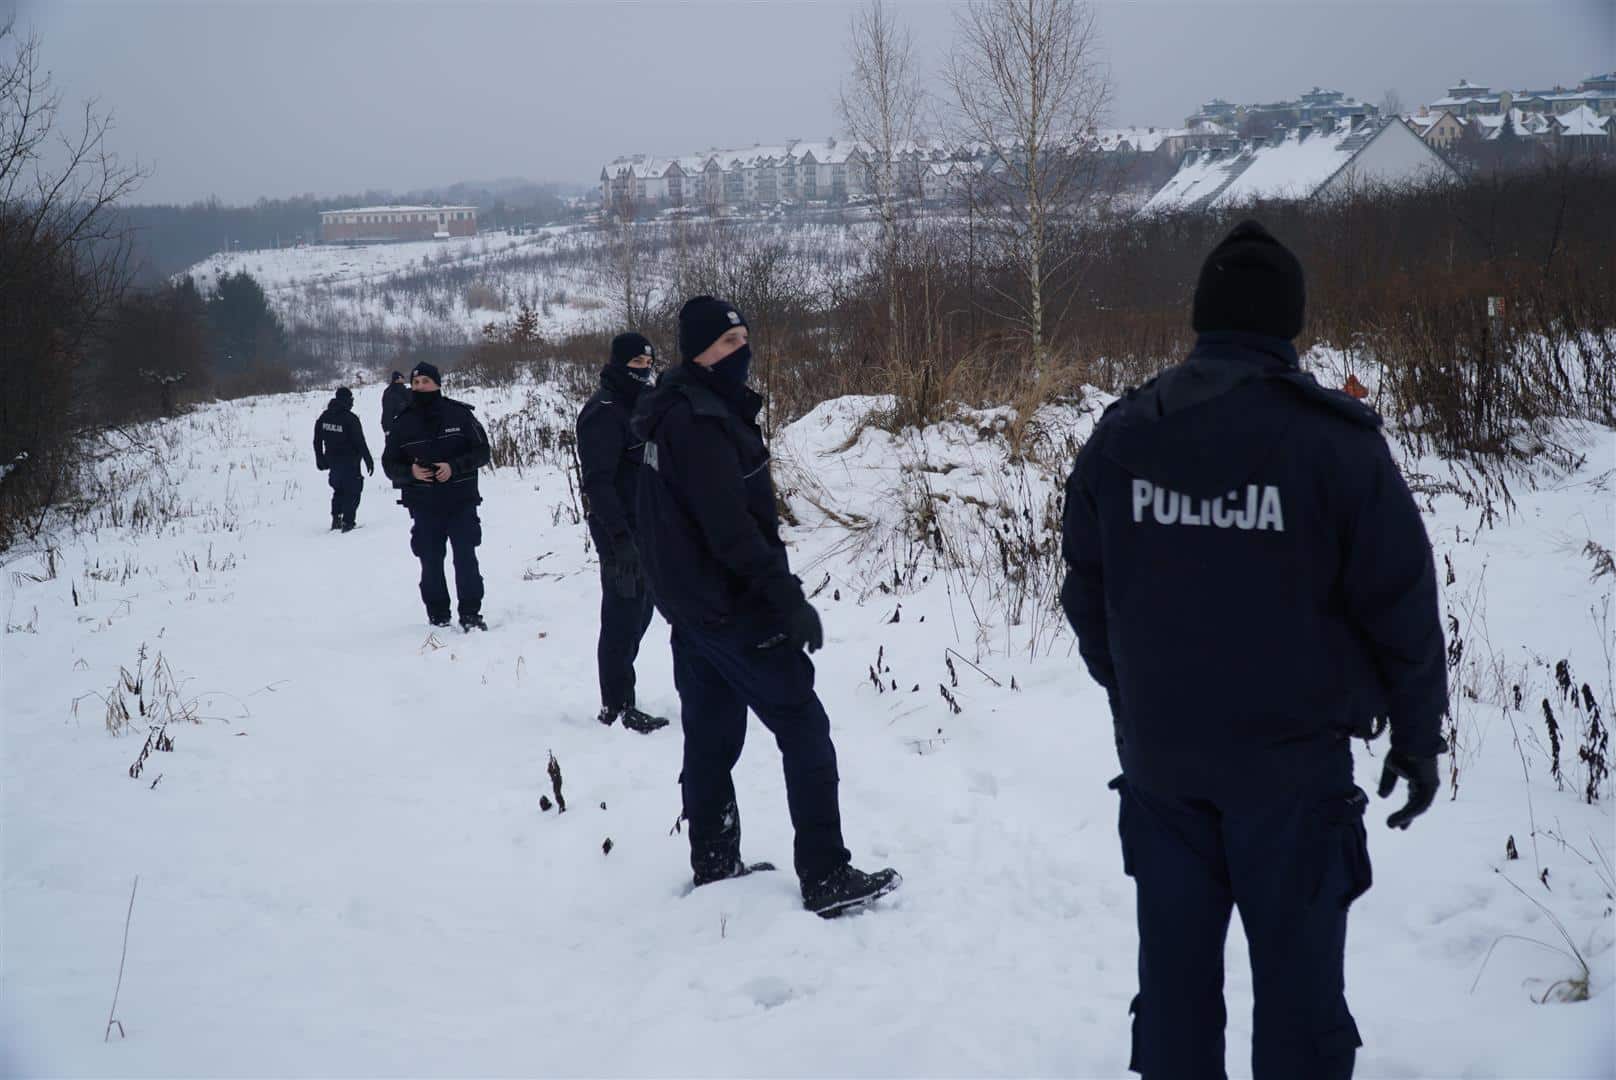 Policja mobilizuje coraz większe siły do poszukiwań Witolda. Co wiadomo na temat zaginięcia?